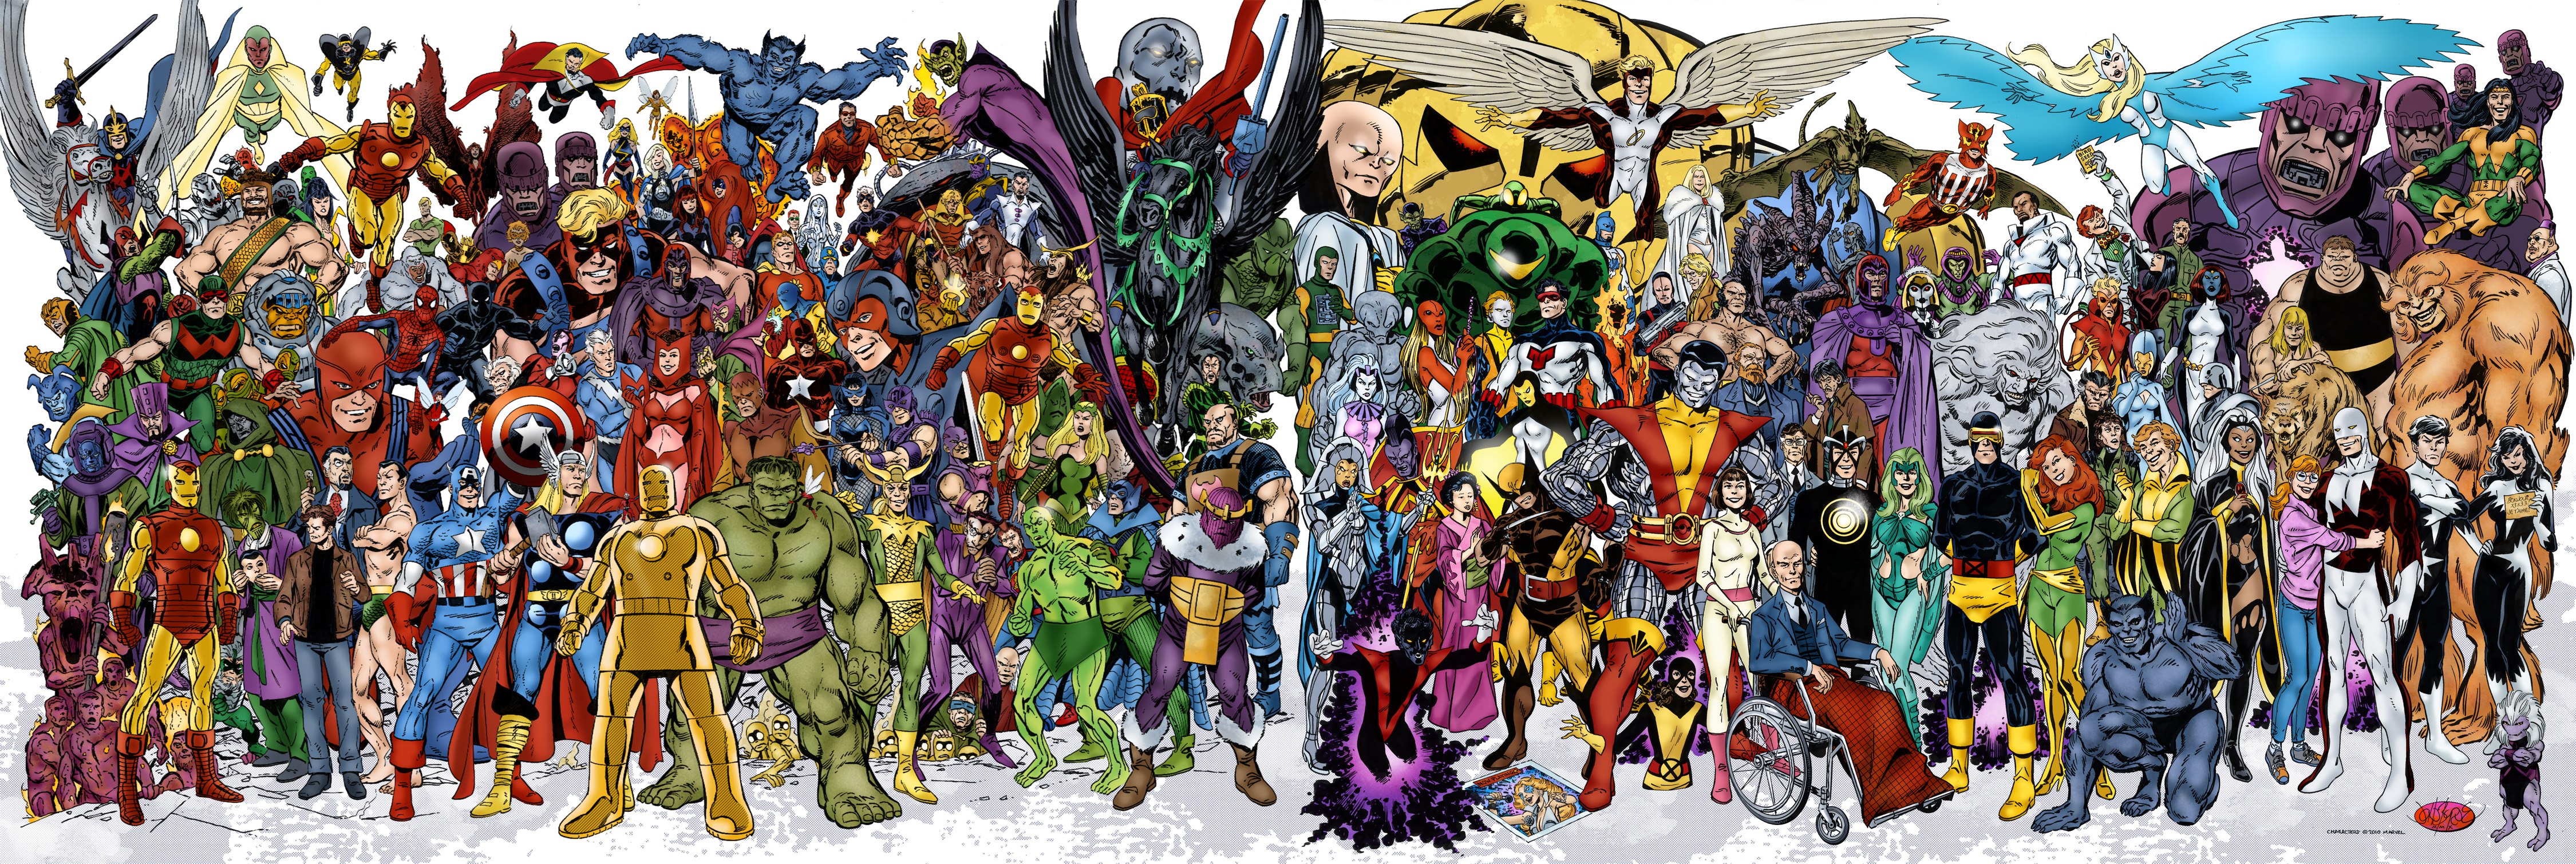 1050865 завантажити шпалери комікси, комікси marvel, адам варлок, алекс саммерс, ангел (комікси marvel), аврора (комікси marvel), месники, banshee (комікси marvel), барон земо, звір (комікси marvel), чорна пантера (комікси marvel), чорна вдова, blob (комікси marvel), капітан америка, керол денверс, чарльз ксавер, клінт бартон, колос, циклоп (комікси marvel), dazzler (marvel comics), destiny (marvel comics), доктор дум, емма фрост, чарівниця (marvel), людина велетень, гладіатор (комікси marvel), голіаф (marvel comics), охоронець (комікси marvel), хенк маккой, хенк пім, havok (комікси marvel), соколине око, геркулес (комікси marvel), халк, залізна людина, джанет ван дайн, джин грей, йокаста (marvel comics), кан завойовник, ka zar (marvel comics), кітті прайд, клав (marvel comics), локі (комікси marvel), магнето (комікси marvel), мар велл, медуза (комікси marvel), мойра мактаггерт, пані марвел, містика (комікси marvel), намор підводник, nightcrawler (marvel comics), northstar (marvel comics), ороро манро, пітер паркер, фенікс (комікси marvel), polaris (комікси marvel), професор x, піро (комікси marvel), quicksilver (marvel comics), червона відьма, скотт саммерс, sentinel (marvel comics), скрулл (комікси marvel), snowbird (marvel comics), людина павук, шторм (комікси marvel), сонячний вогонь (комікси marvel), супер скрулл, танос, тор, альтрон, бачення (комікси marvel), ванда максимова, оса (комікси marvel), спостерігач (marvel comics), біла королева (комікси marvel), росомаха, чудо людина, x men, yellowjacket (marvel comics) - заставки і картинки безкоштовно